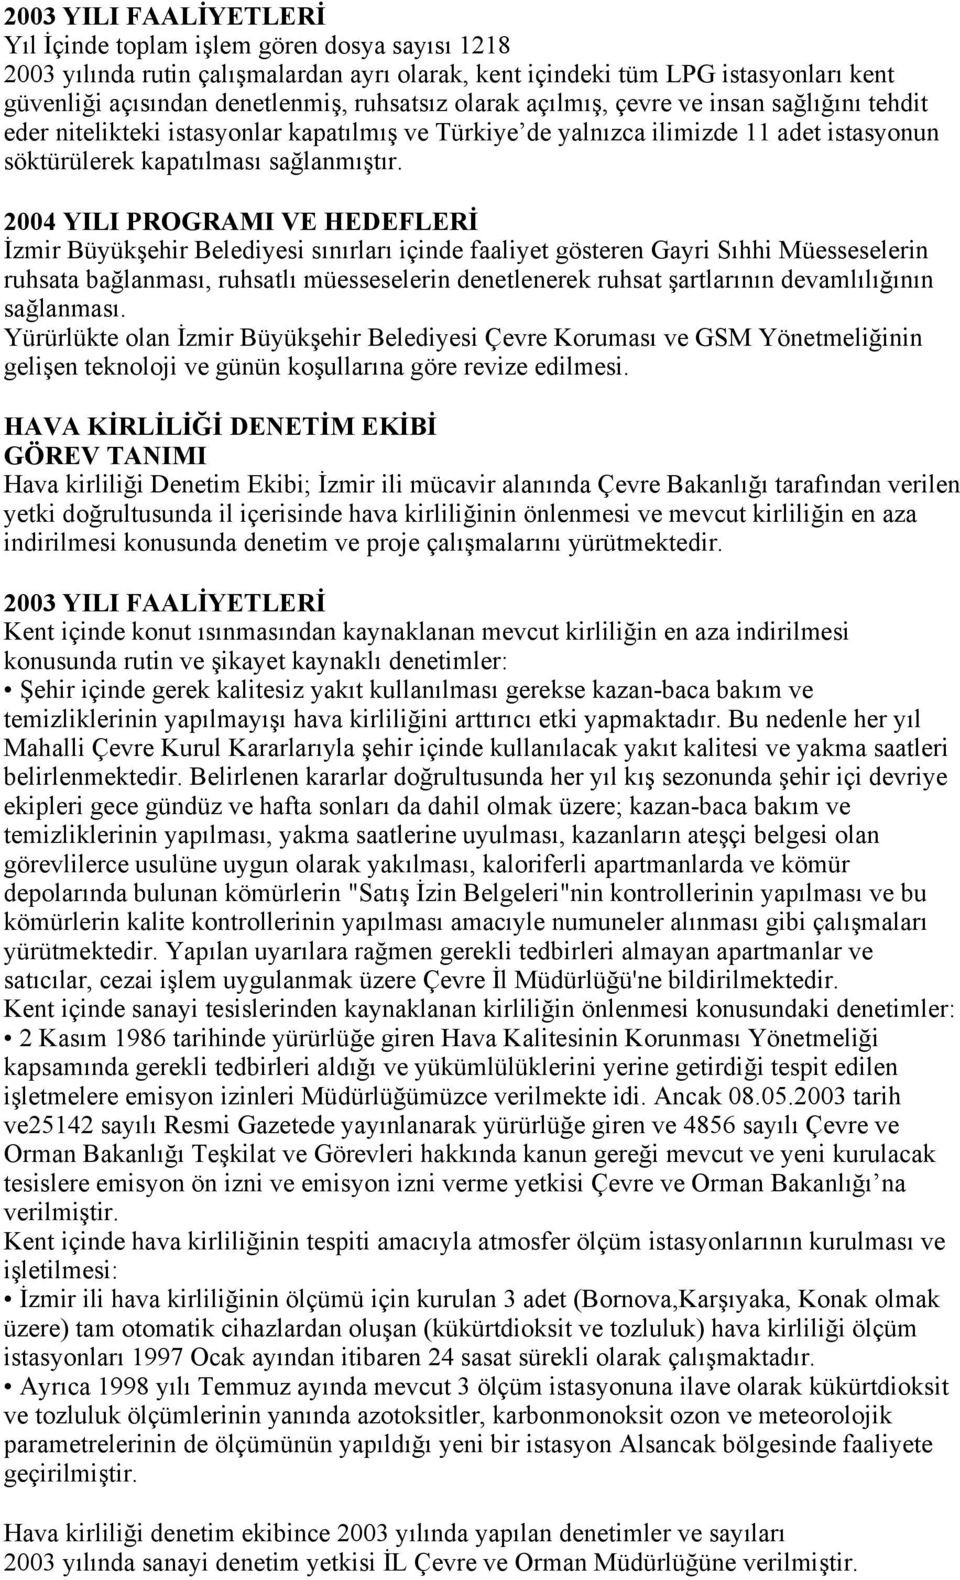 2004 YILI PROGRAMI VE HEDEFLERİ İzmir Büyükşehir Belediyesi sınırları içinde faaliyet gösteren Gayri Sıhhi Müesseselerin ruhsata bağlanması, ruhsatlı müesseselerin denetlenerek ruhsat şartlarının